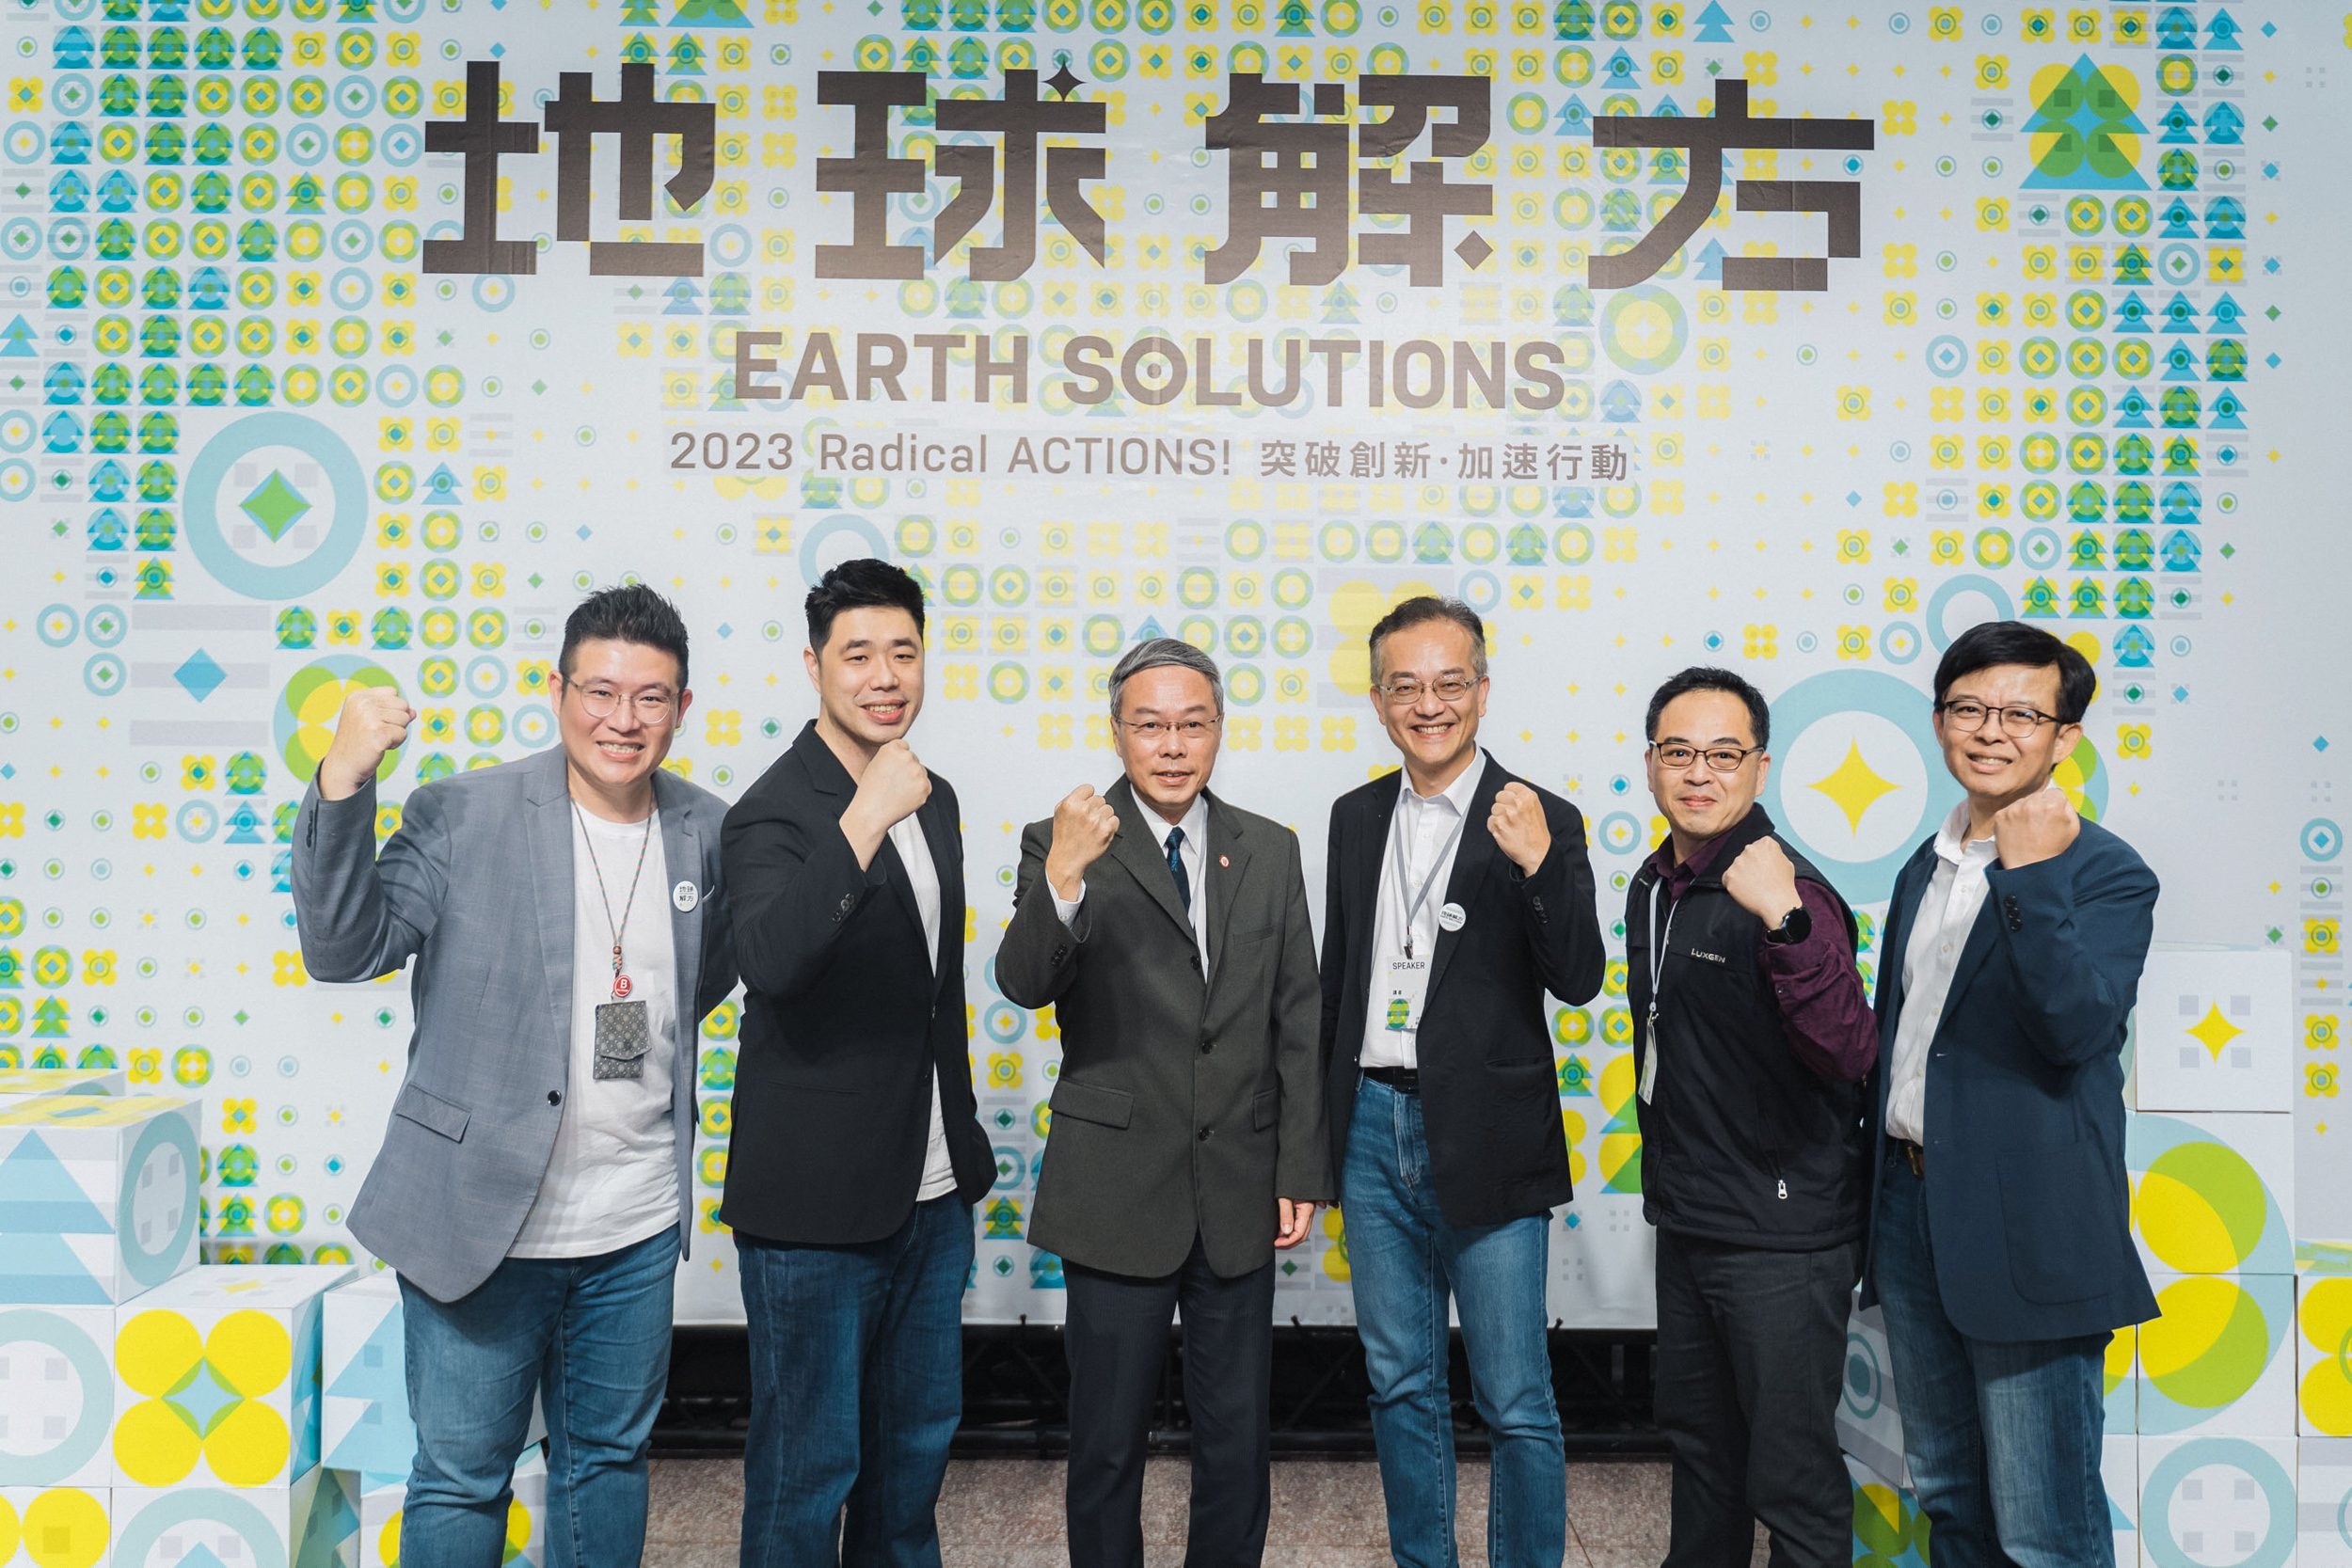 交通部運輸研究所、高市政府交通局、裕隆集團、台灣微光行動協會響應「地球解方：2023 永續設計行動年會」，打造共善社會「行動派」。